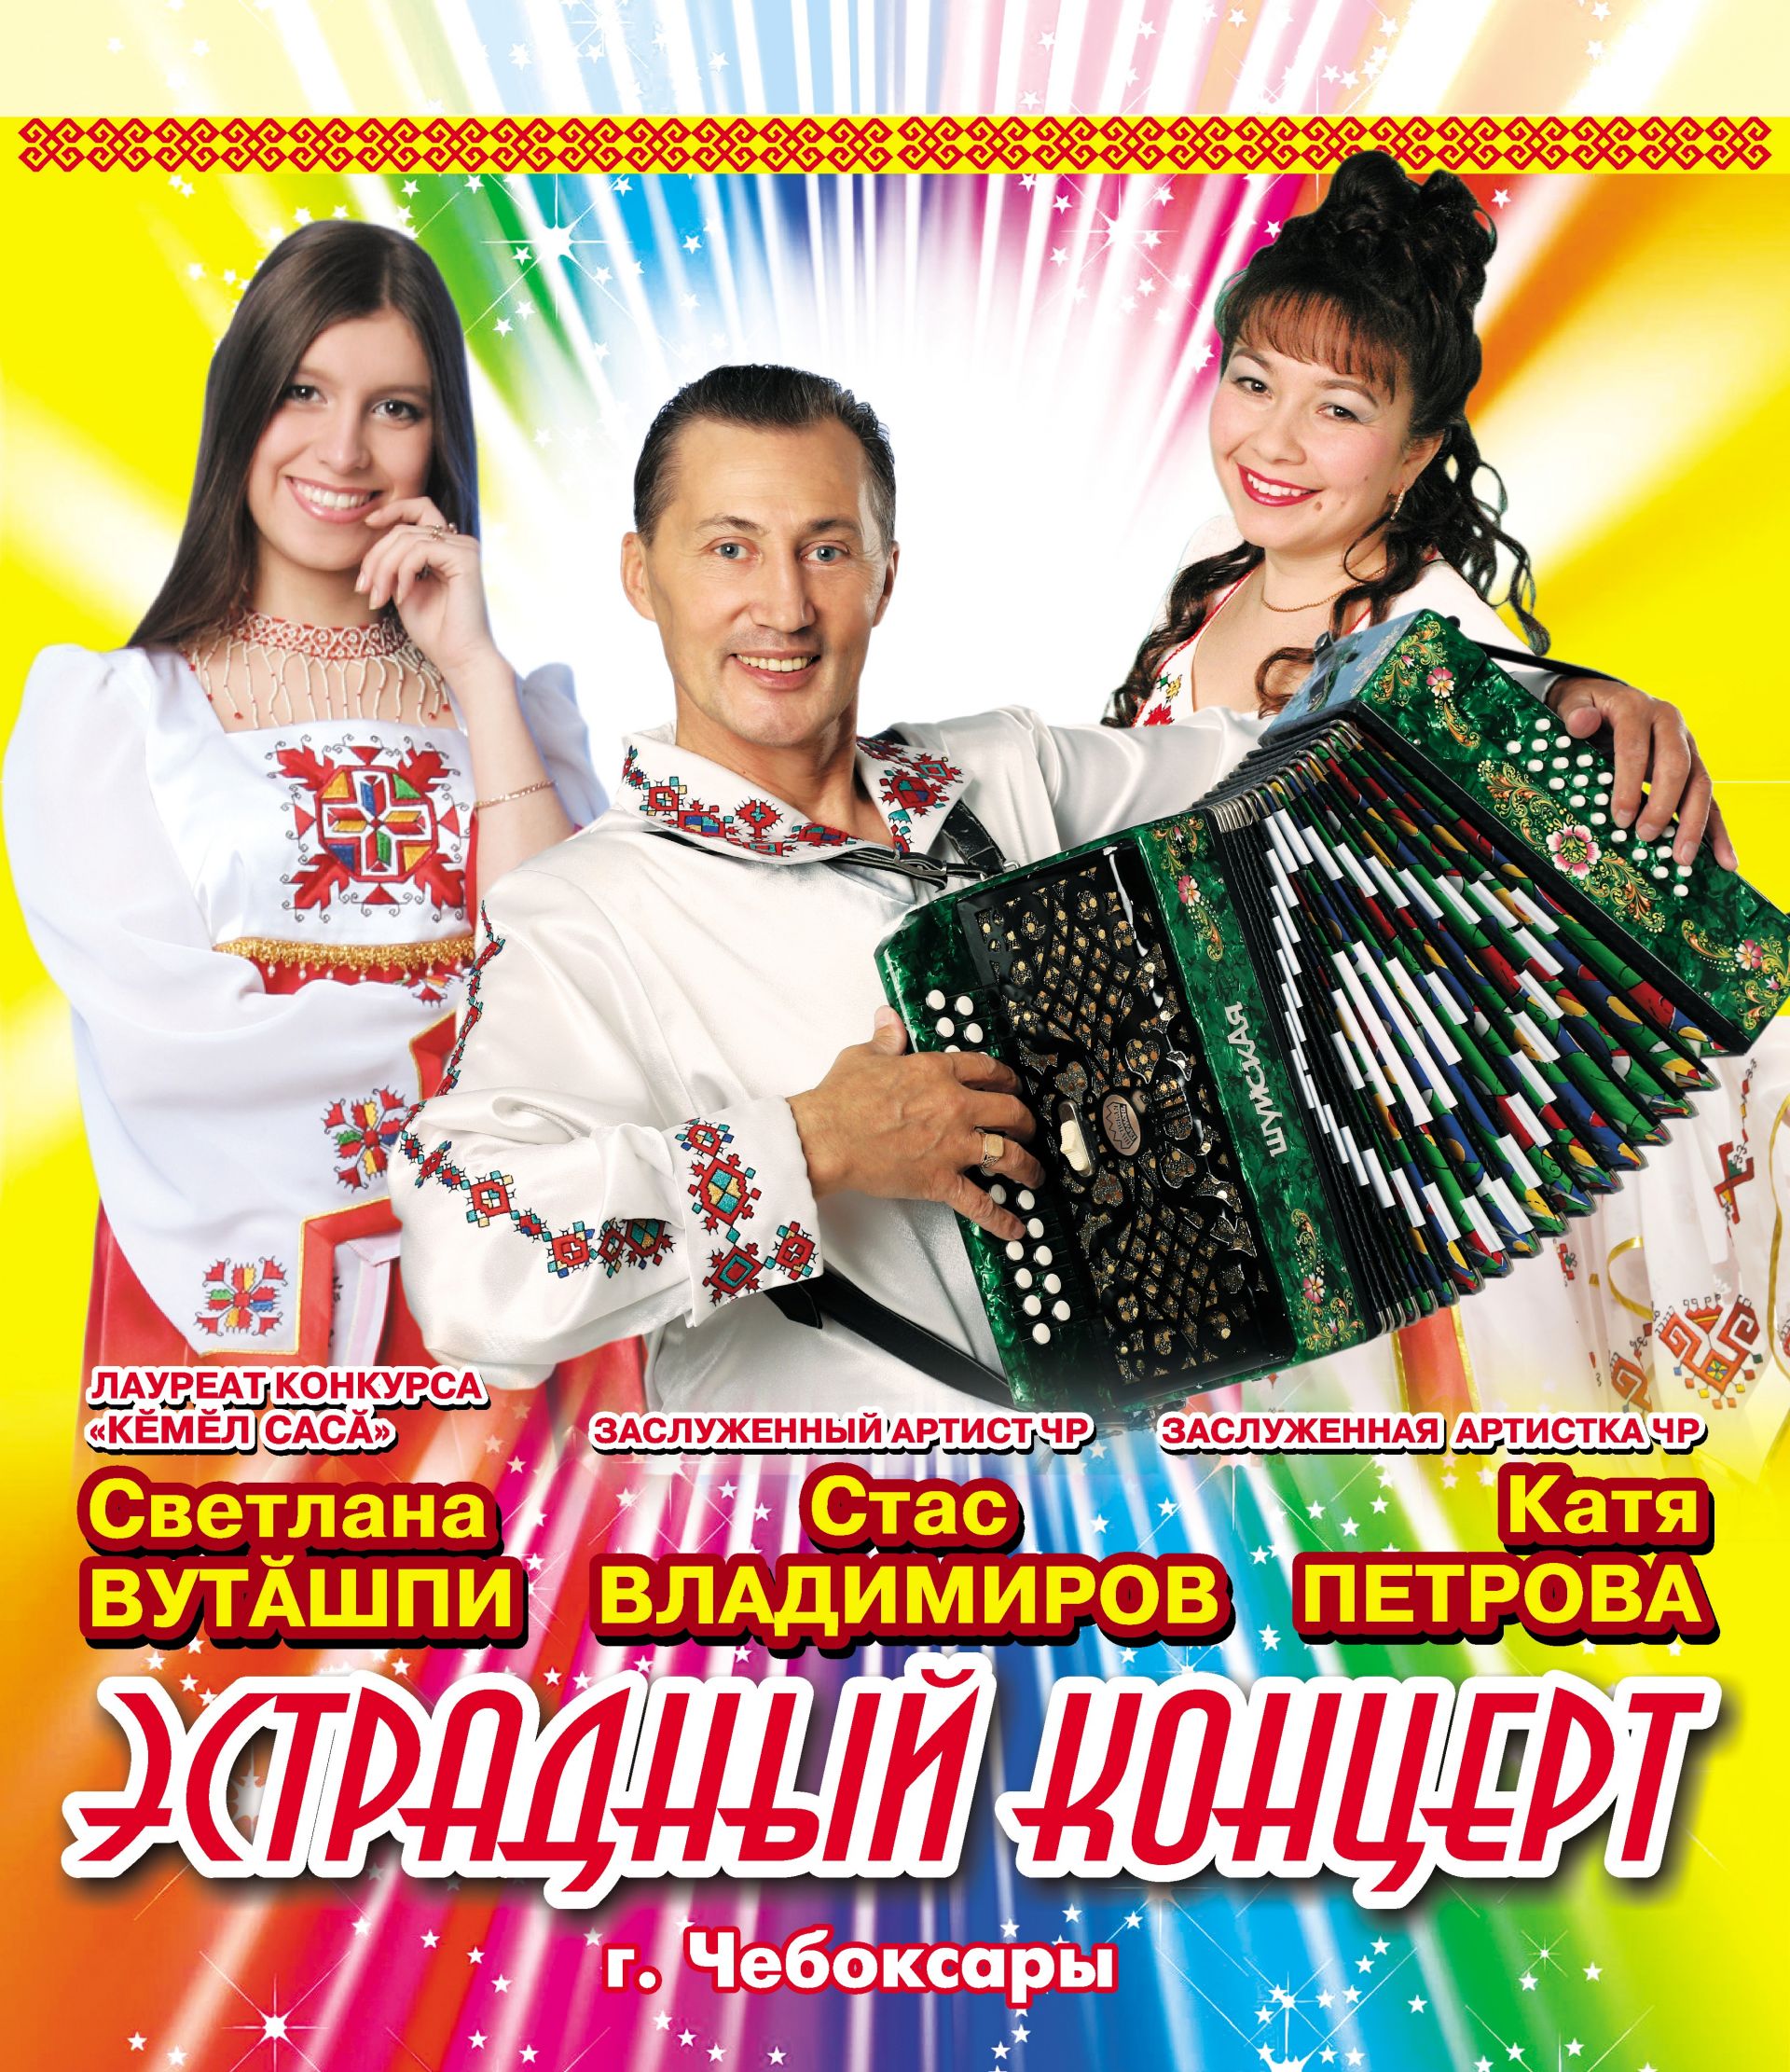 Афиша концертов чувашской эстрады